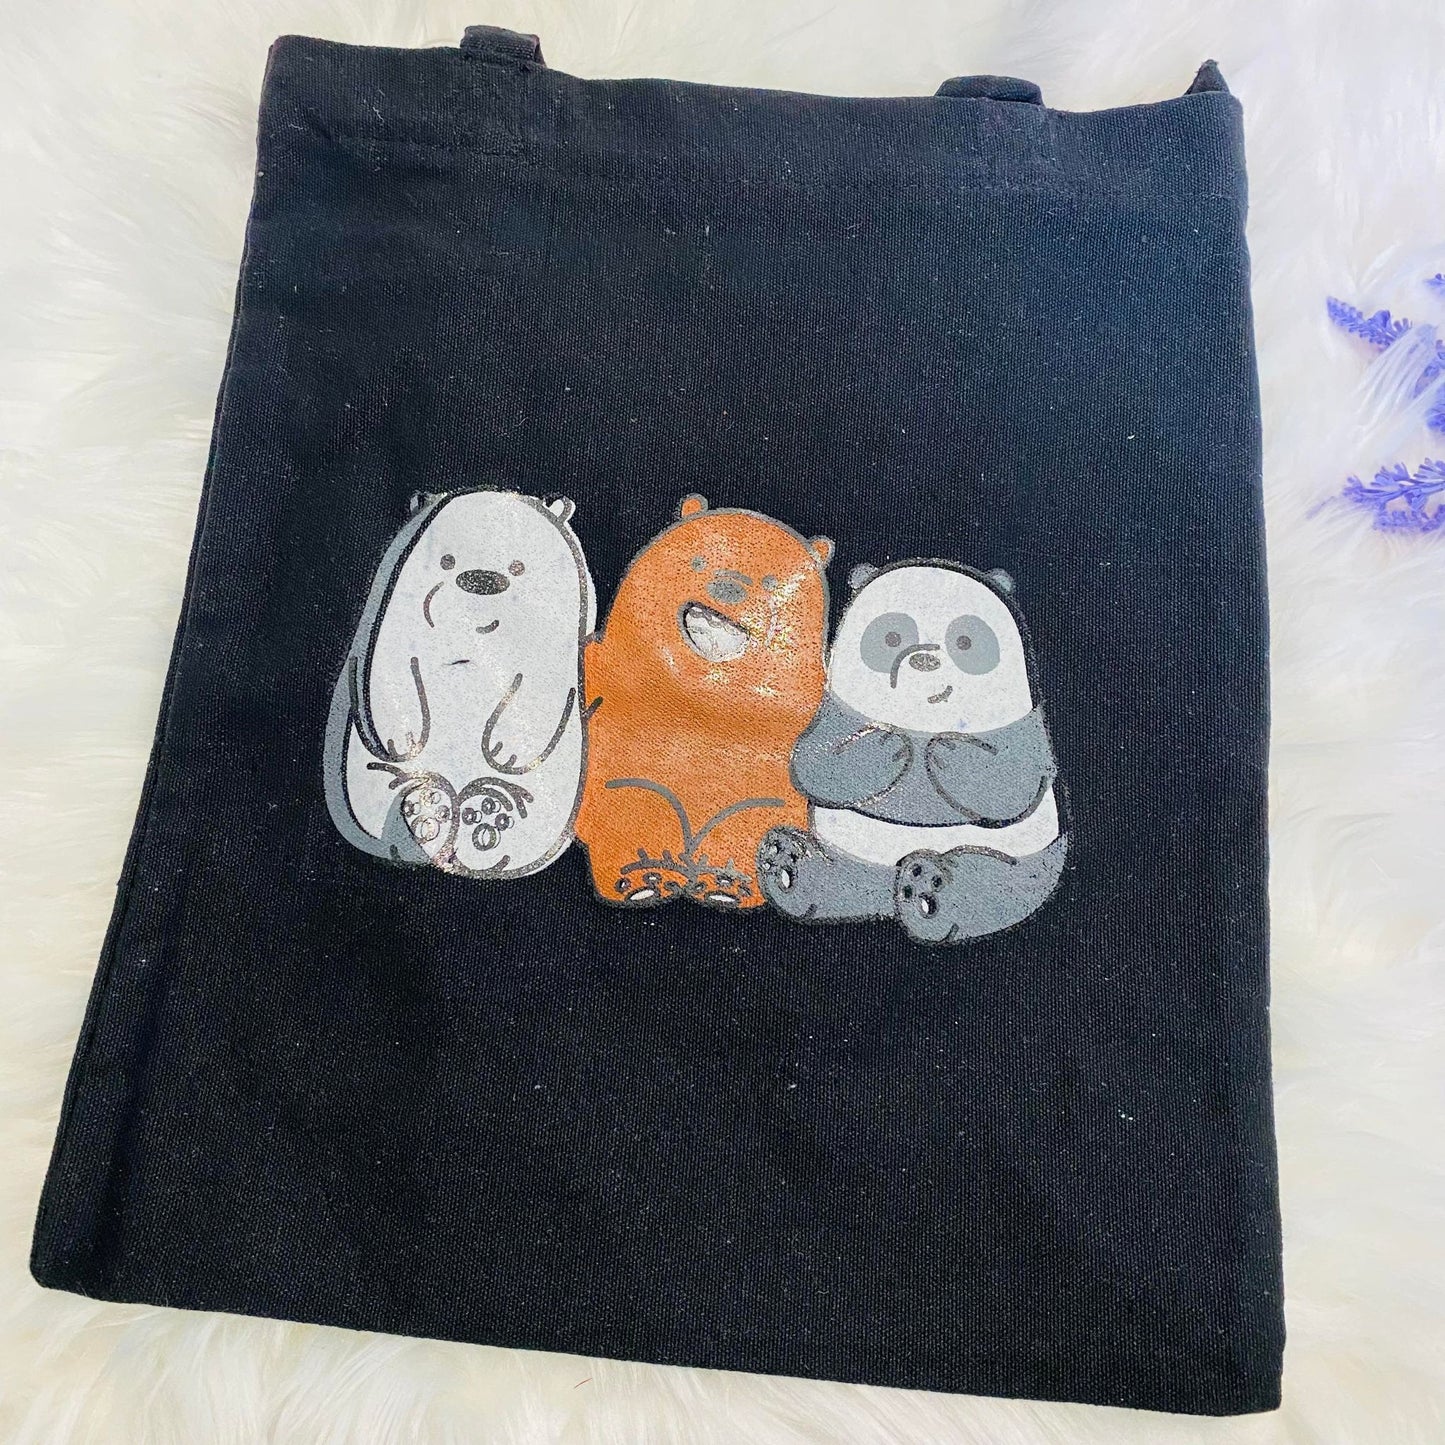 Cotton Tote Bag, Handmade Canvas tote Bag, Reusable Bag, Cute Tote Bag, Cat and Panda Print Bag, Vegan Tote Bag, Gift For Her